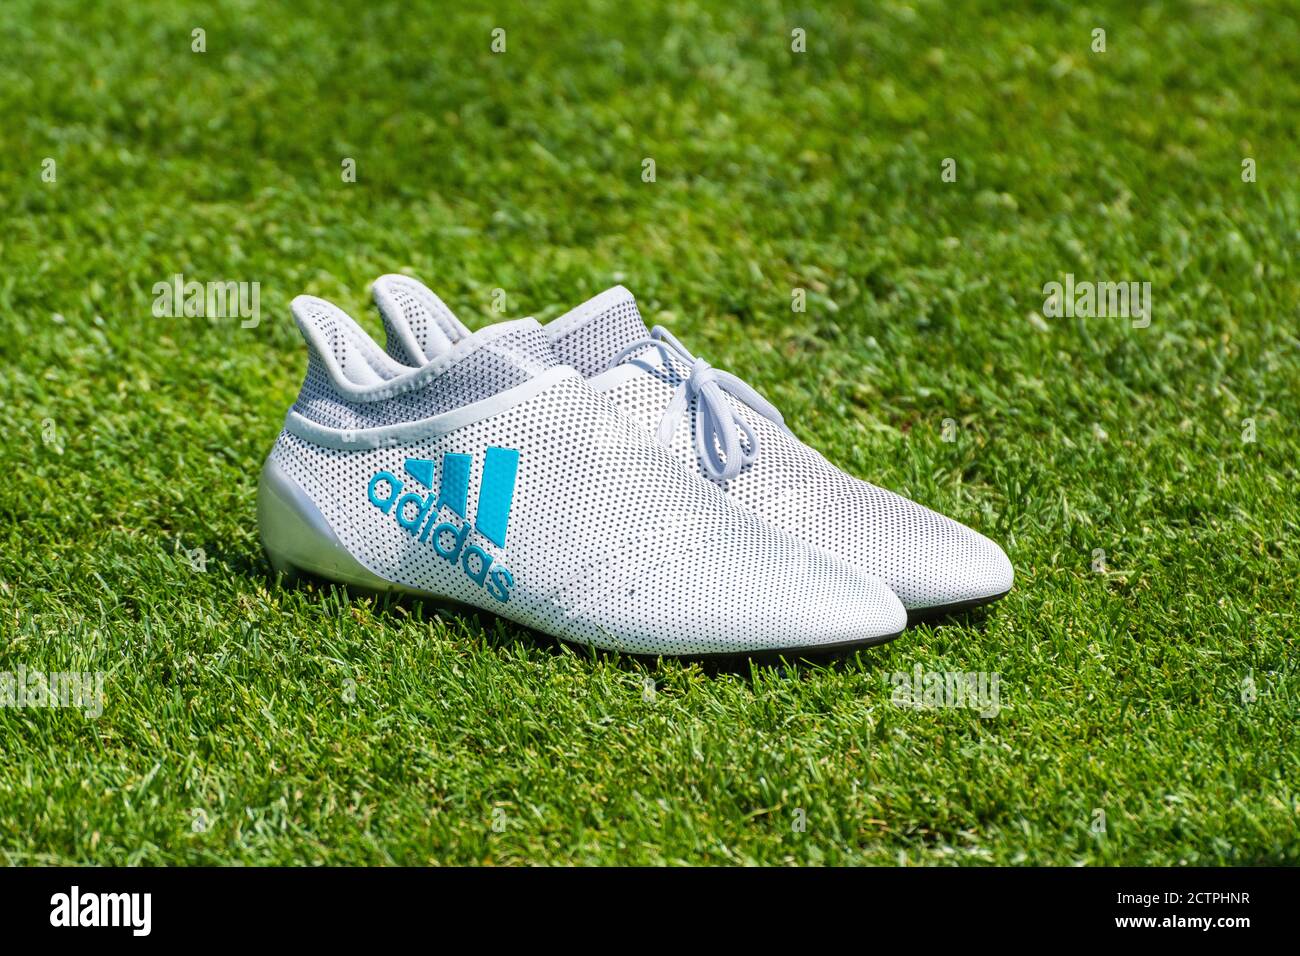 Adidas Football Boots Immagini e Fotos Stock - Alamy